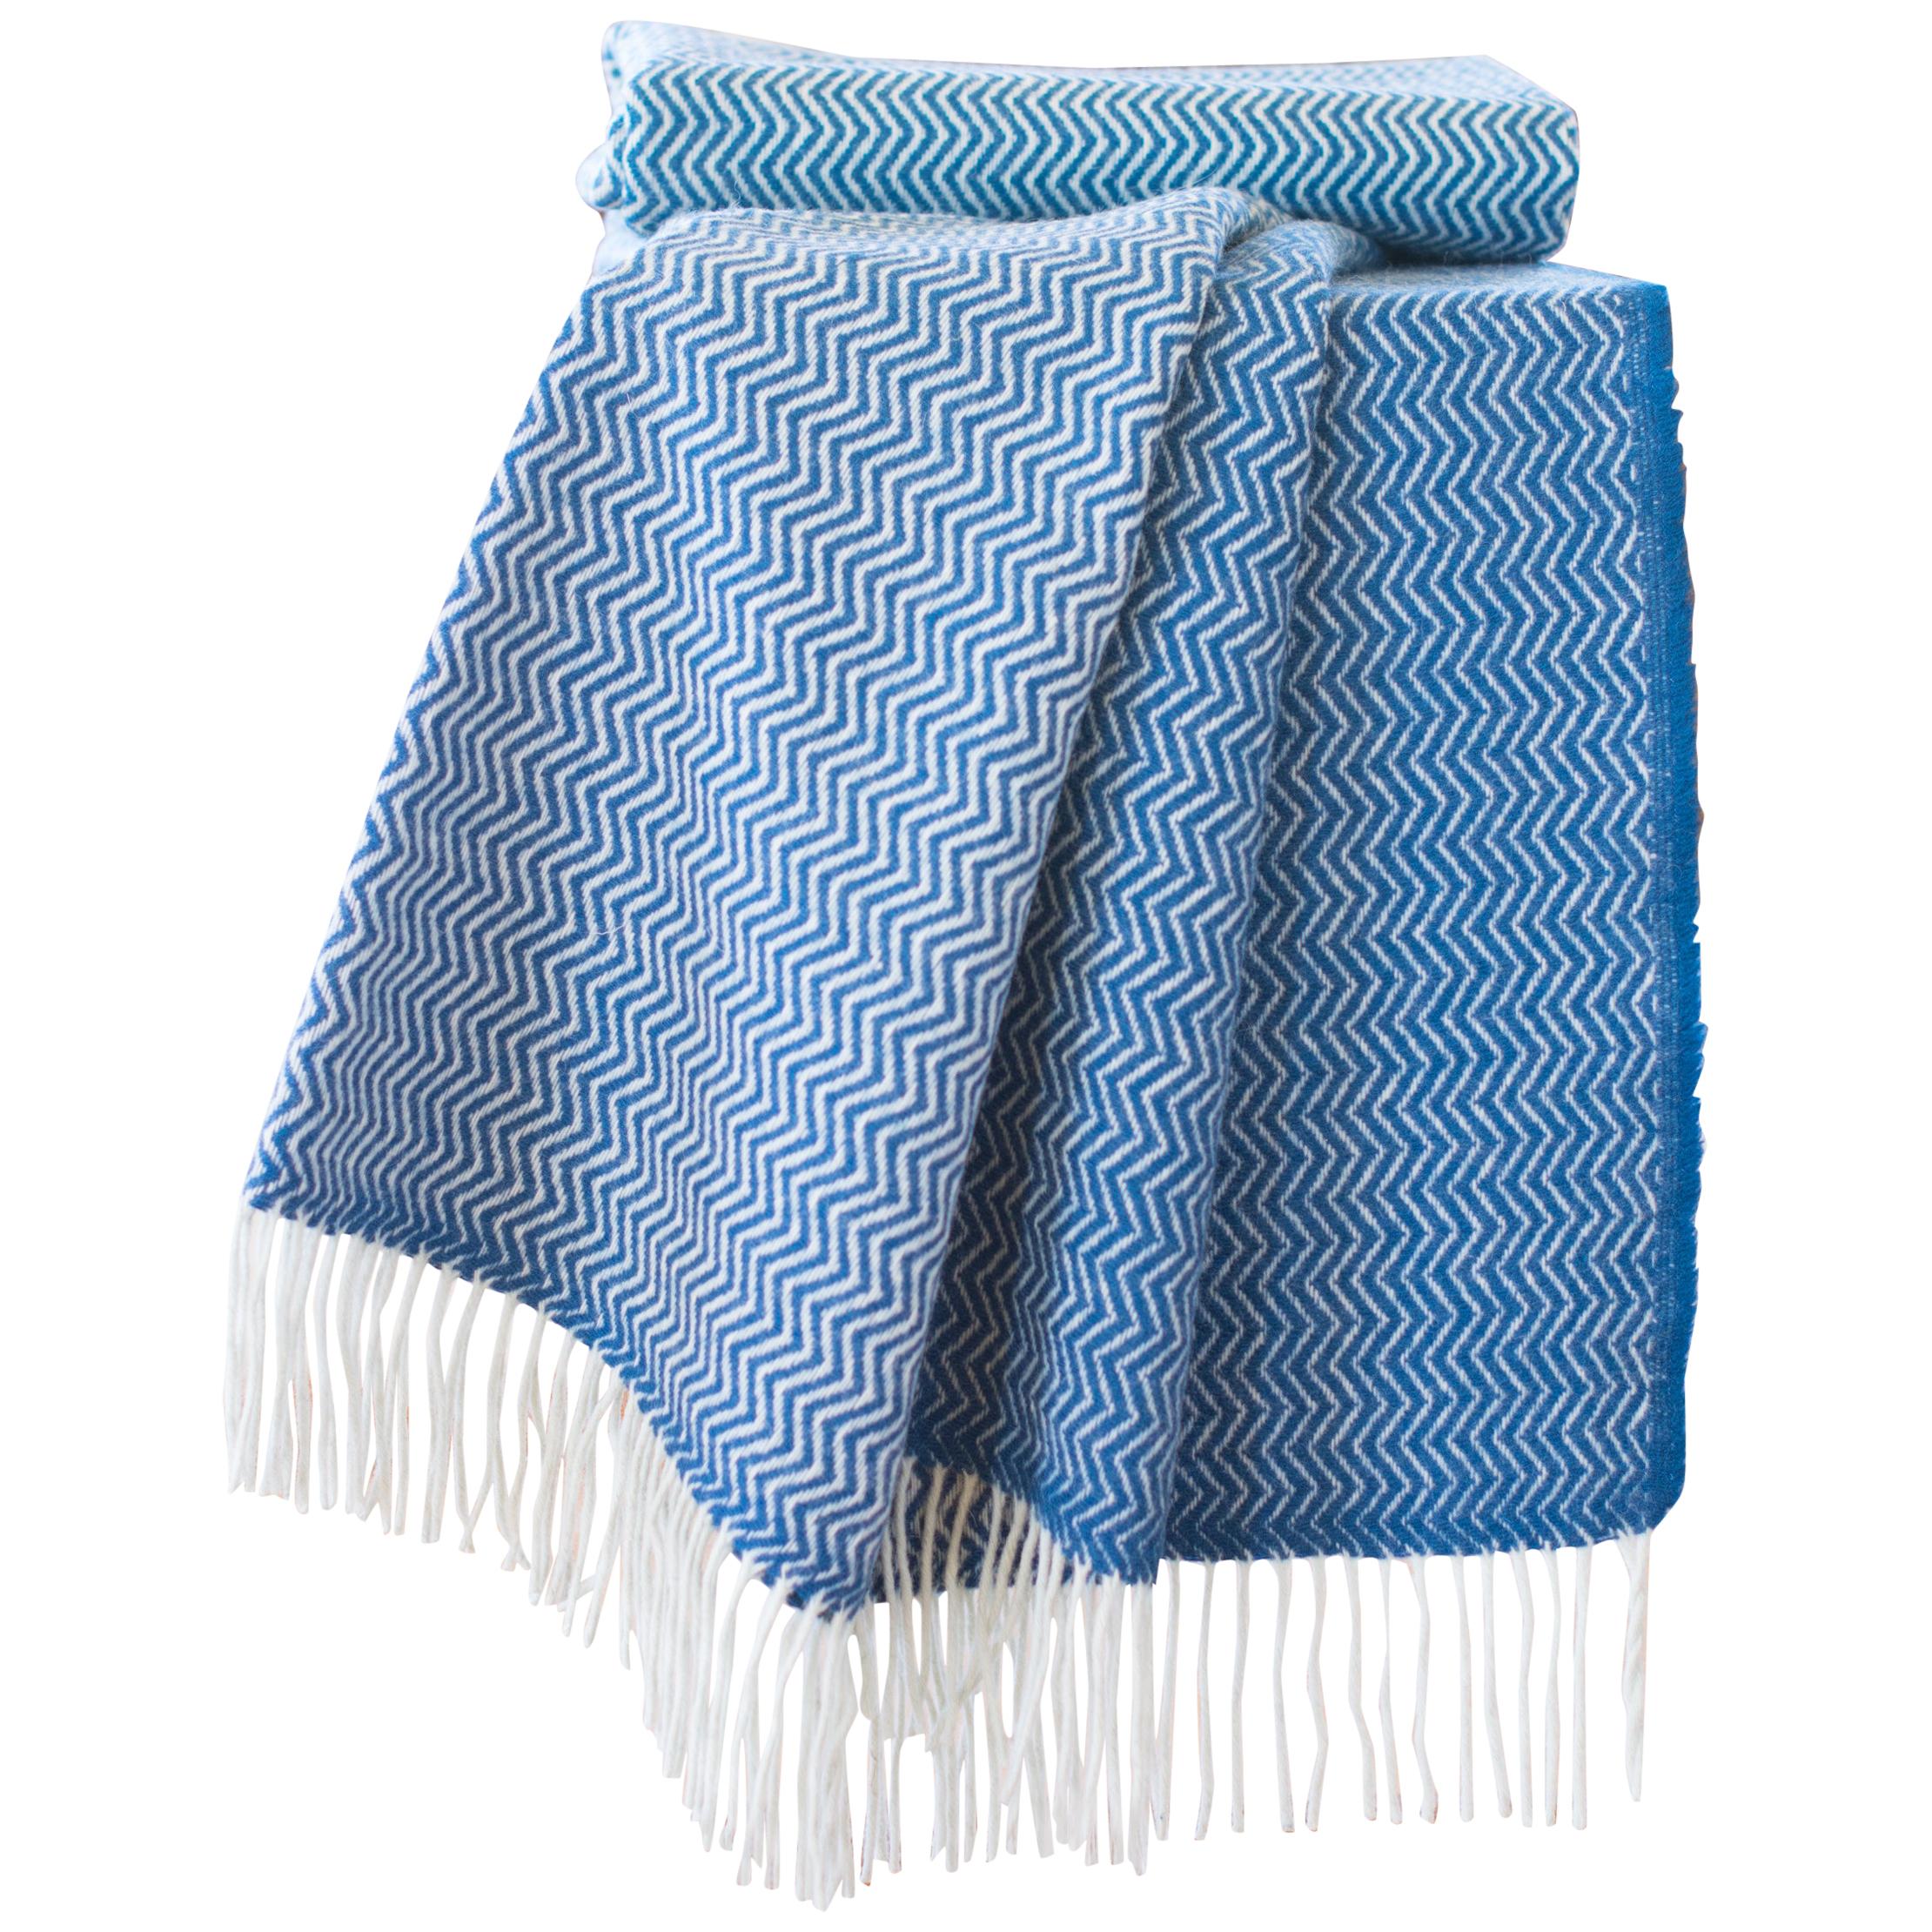 Handgefertigte Decken-/Tropfendecke aus organischer Wolle in Dunkelblau Wave Design, Portugal